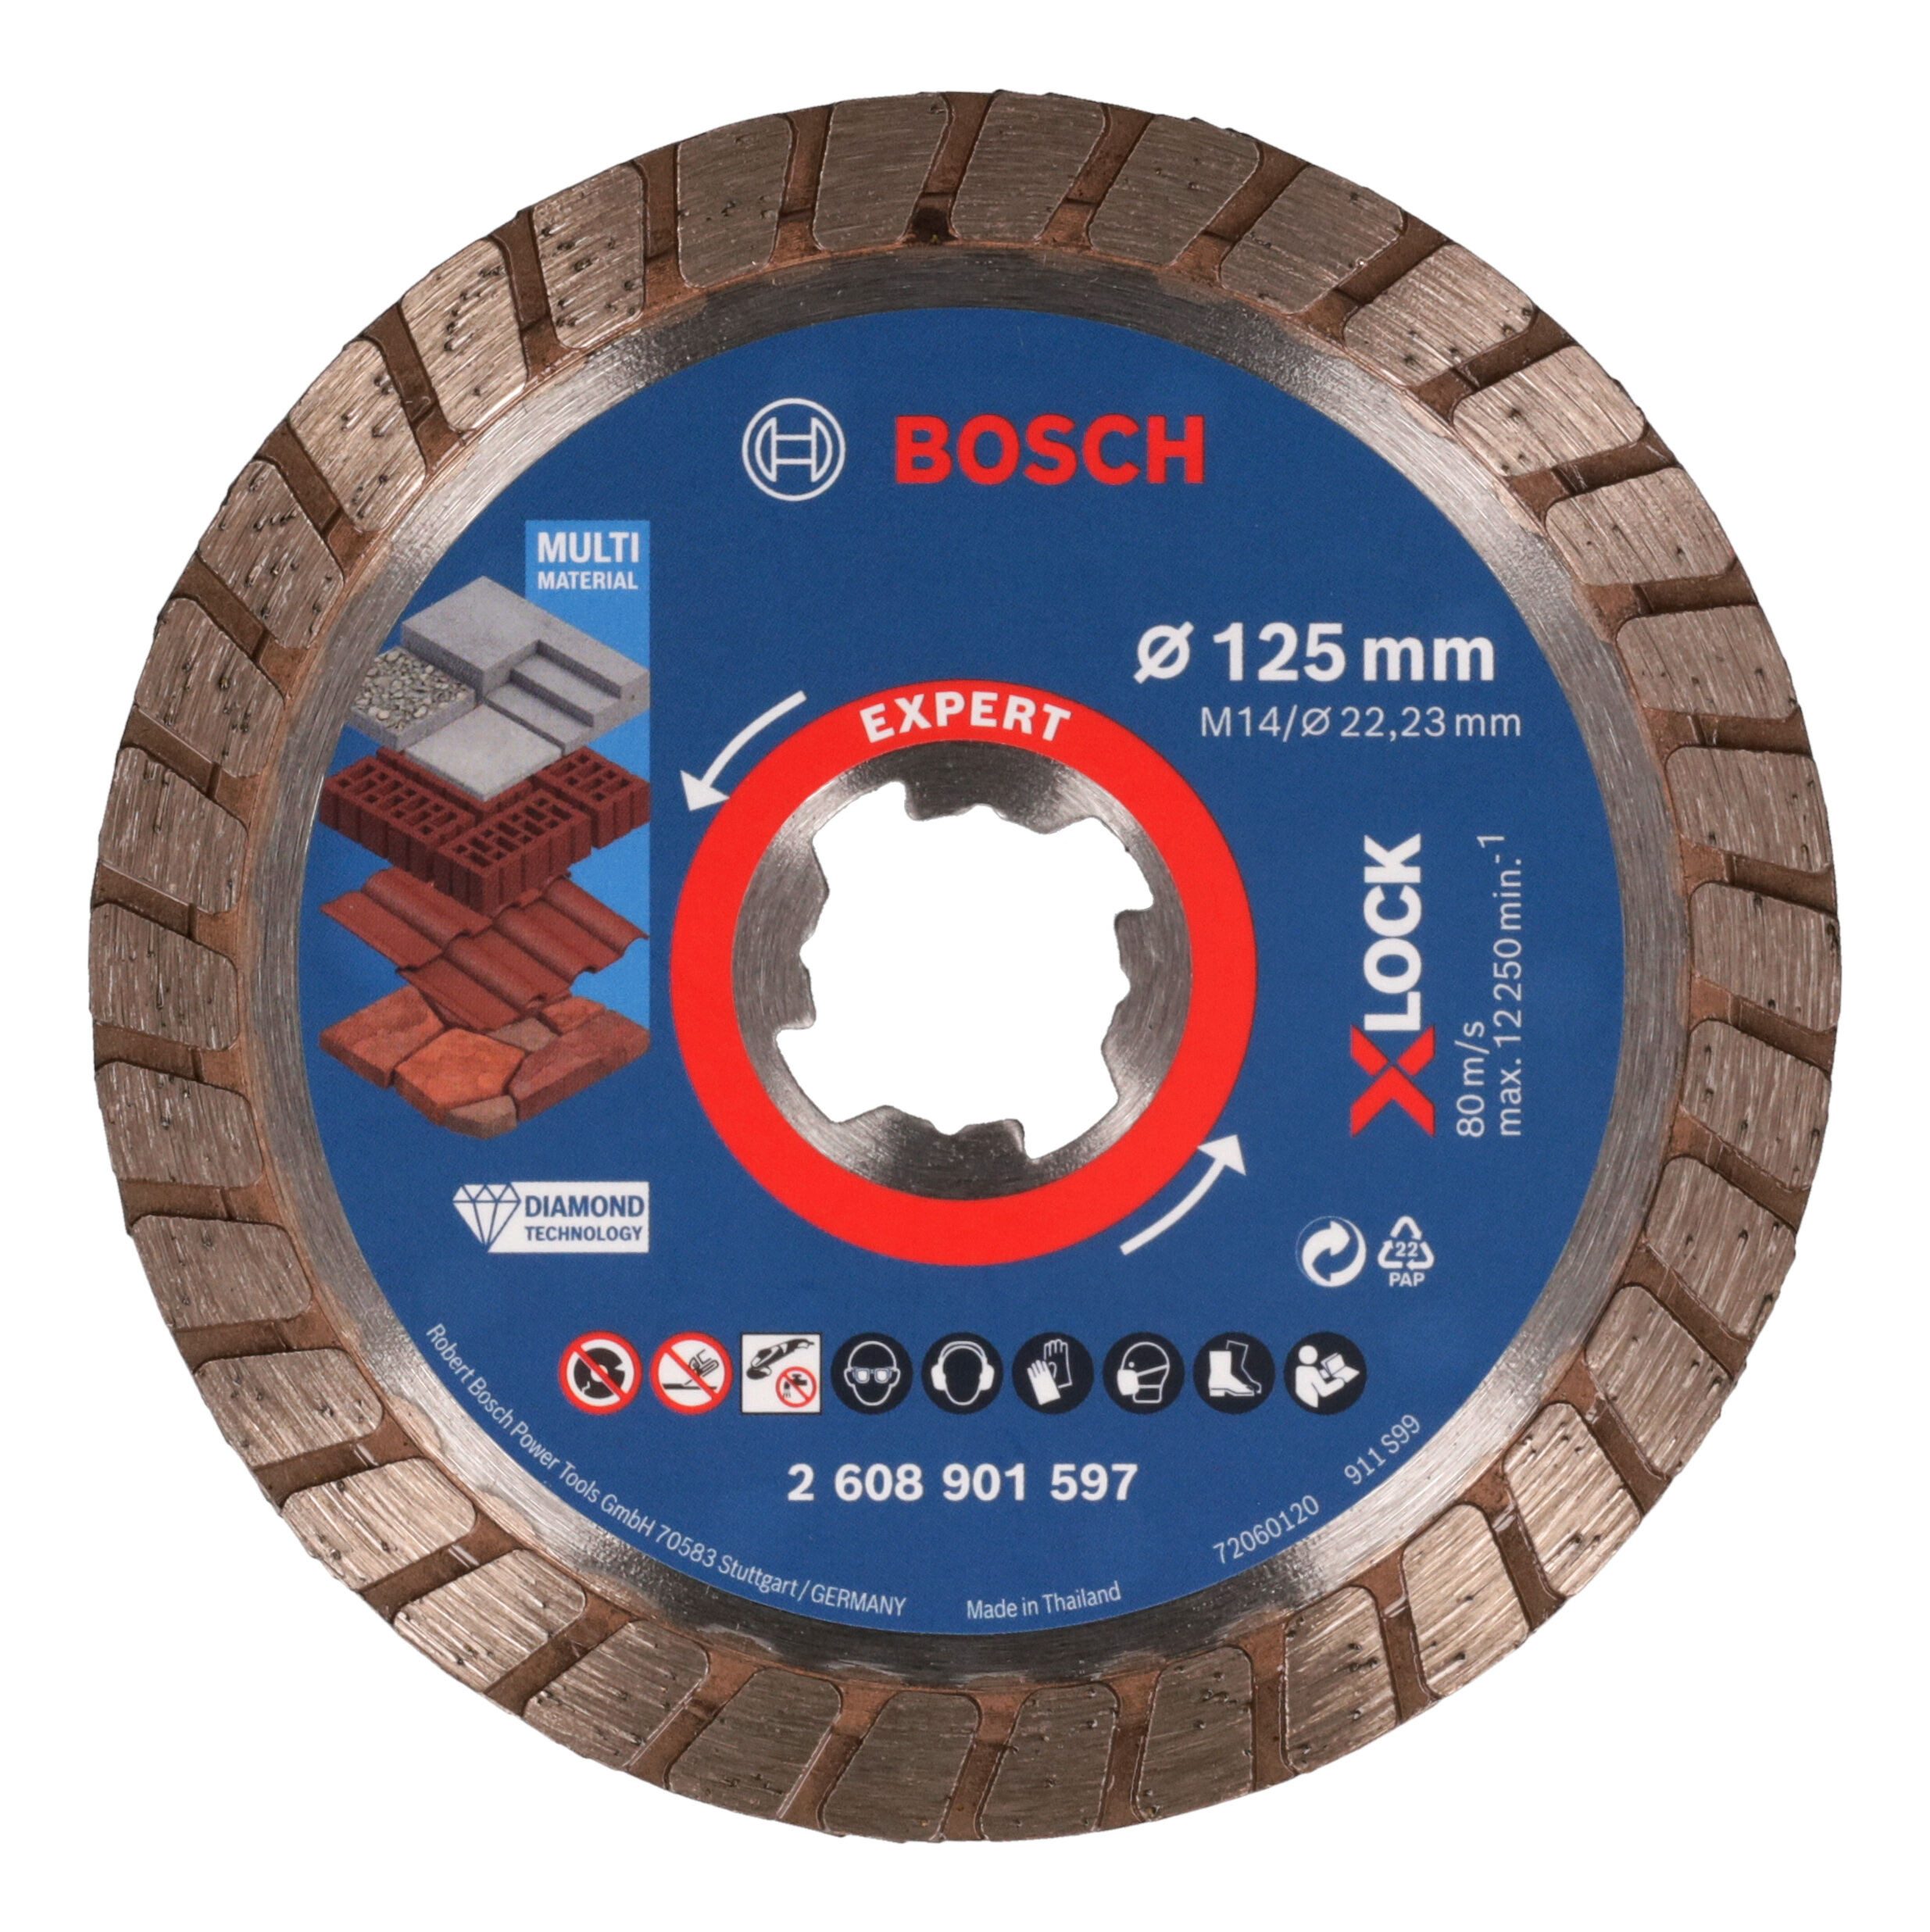 BOSCH Trennscheibe Expert MultiMaterial X-LOCK, Ø 125 mm, Turbo Diamanttrennscheiben, 125 x 22,23 x 2,4 x 12 mm